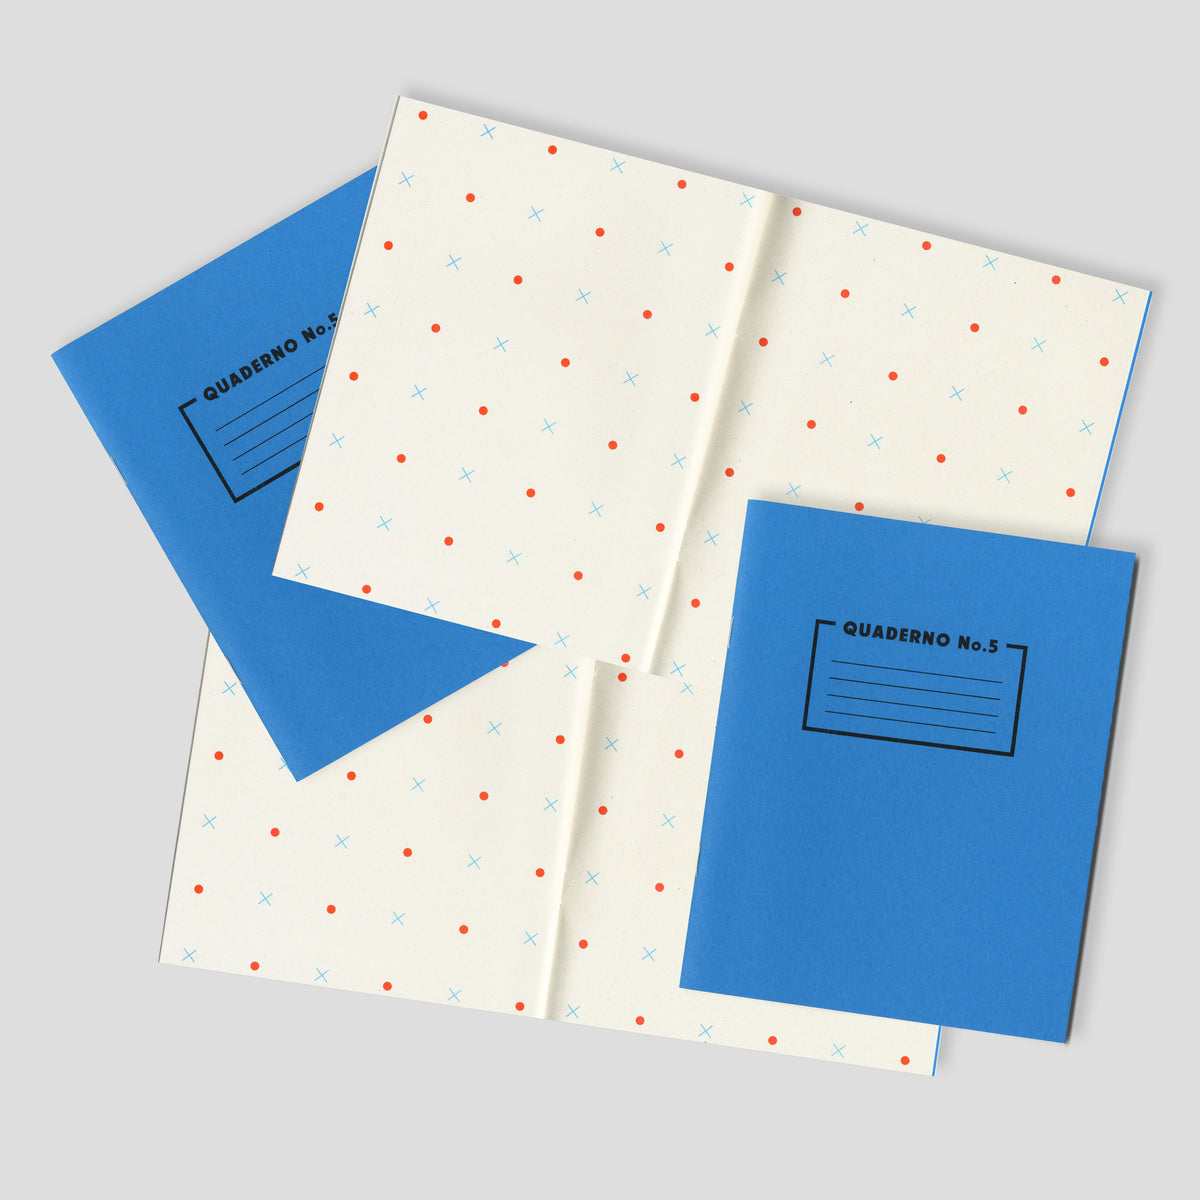 Quaderno No.5 - Bright Blue Notebook